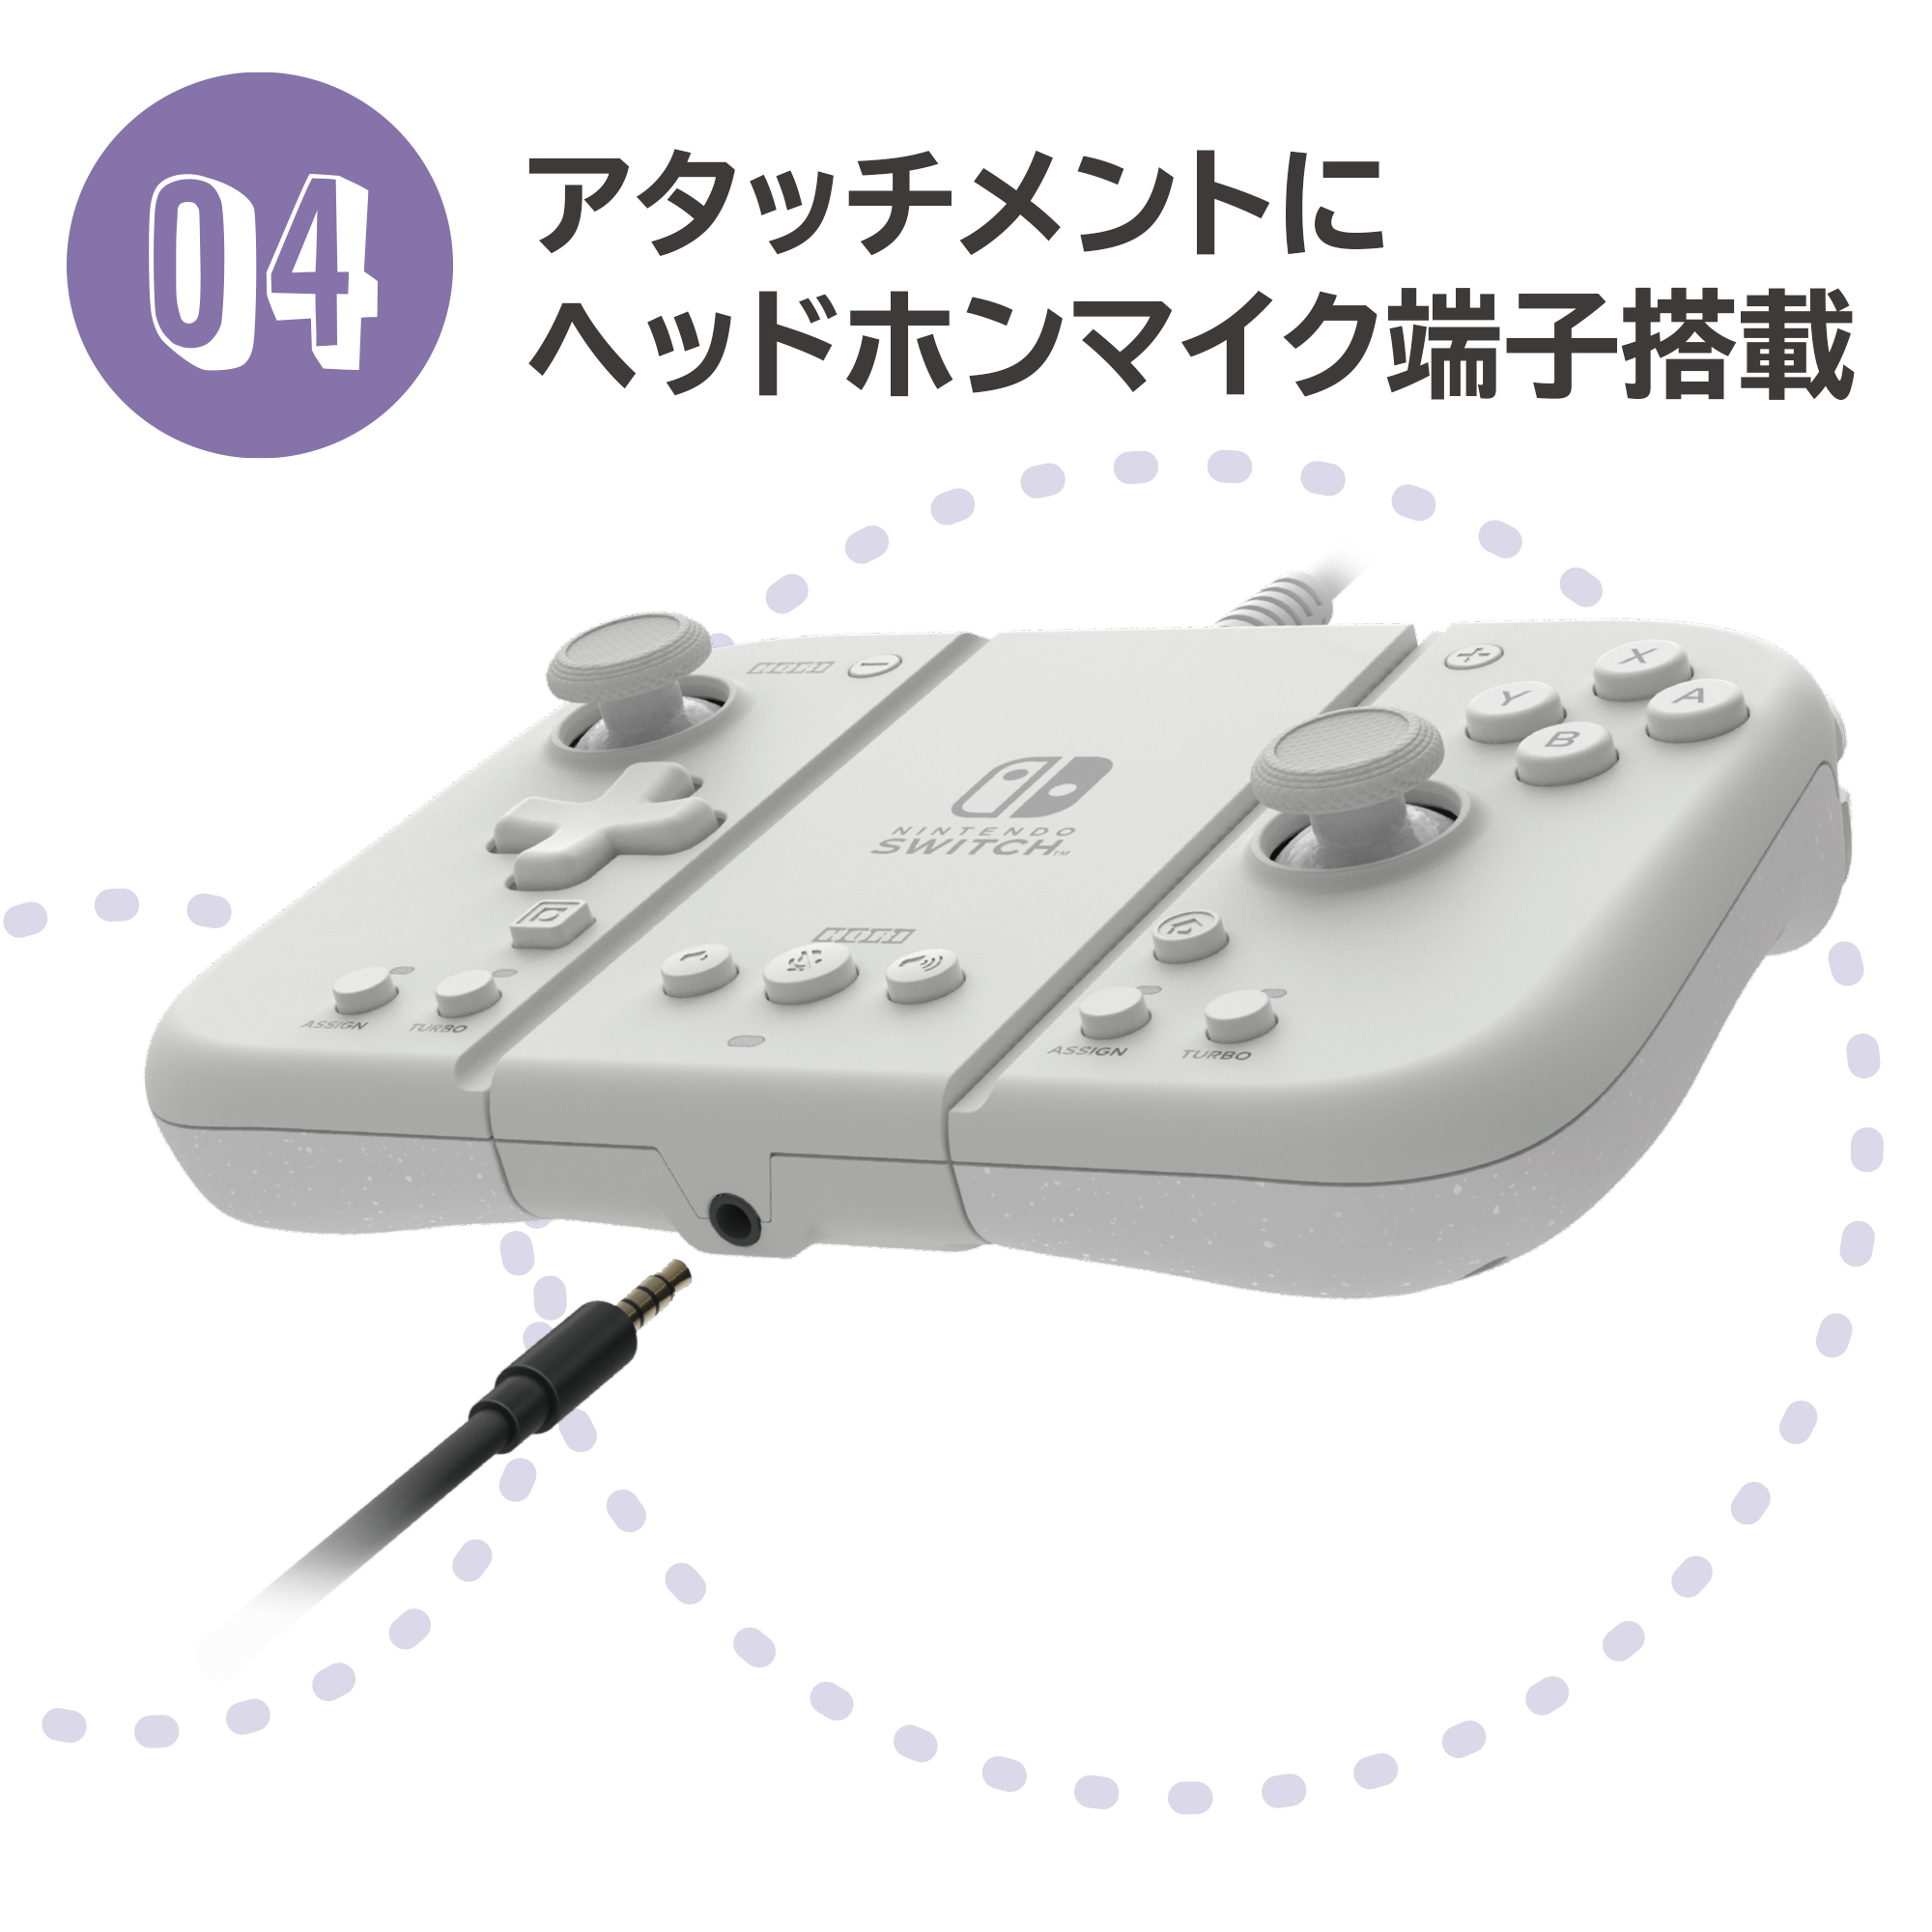 グリップコントローラーFit アタッチメントセット for Nintendo Switch / PC　ソフトパープル